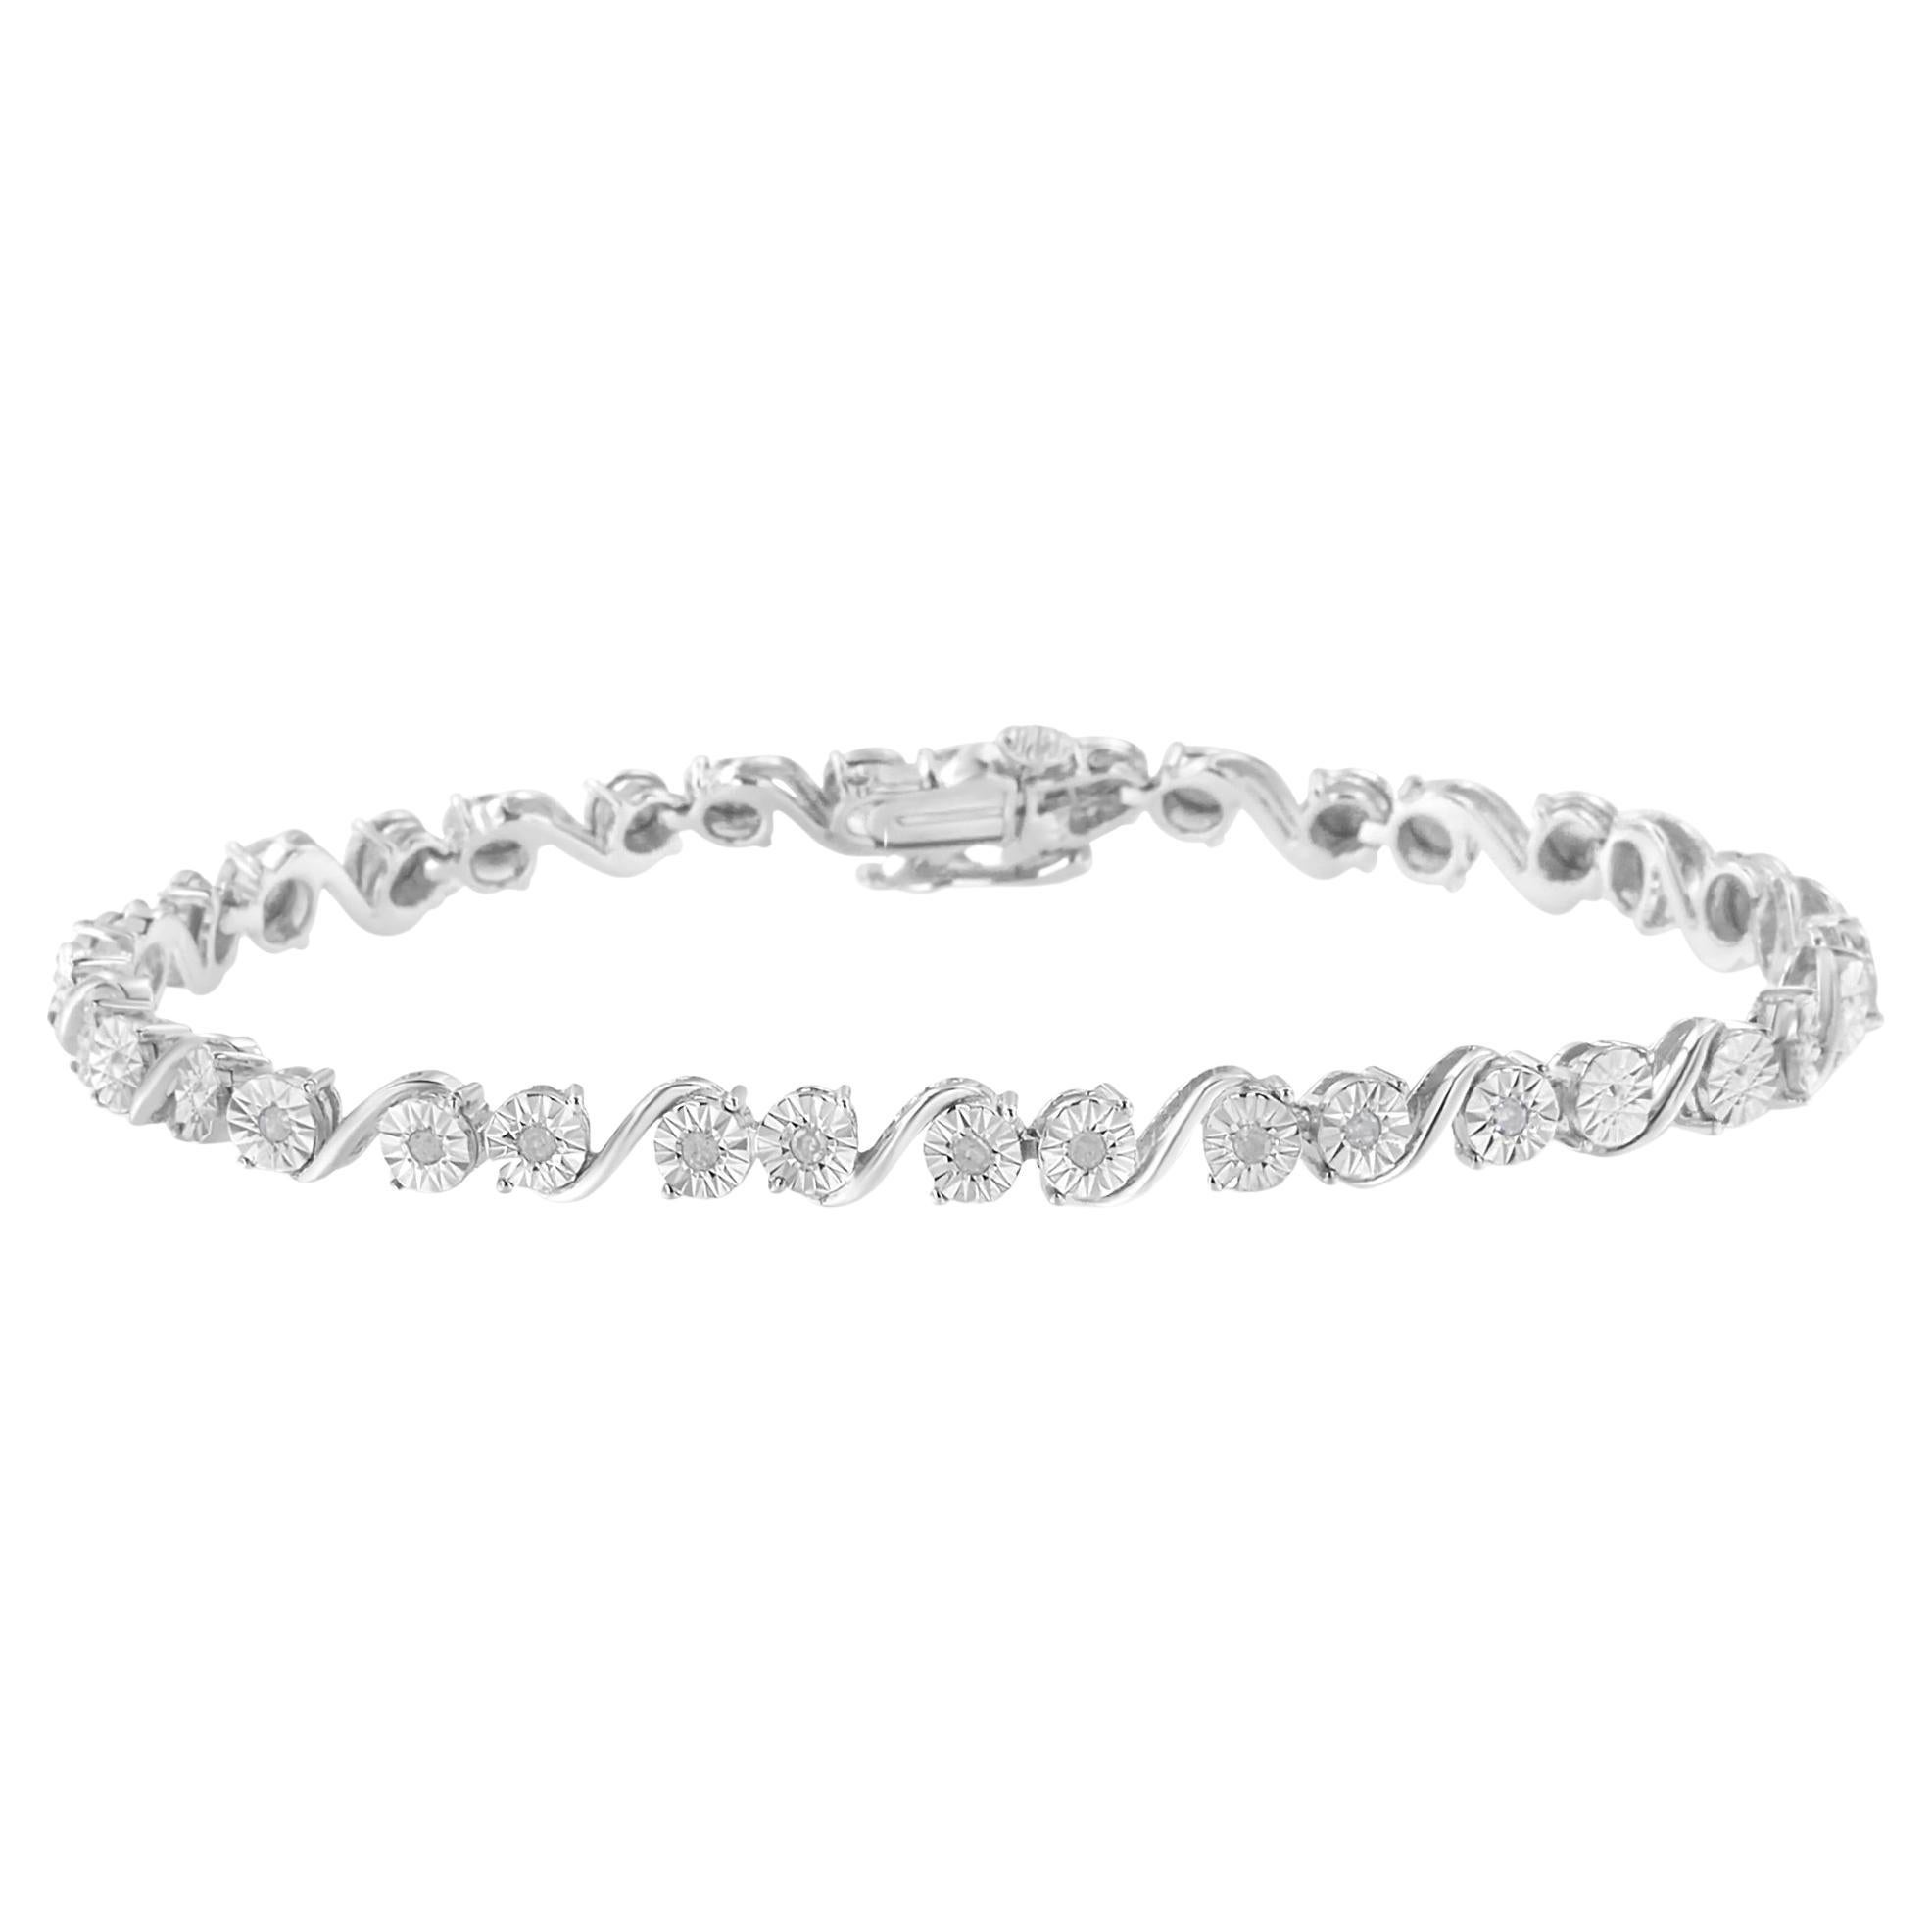 .925 Sterling Silver 1/10 Carat Diamond Link Bracelet